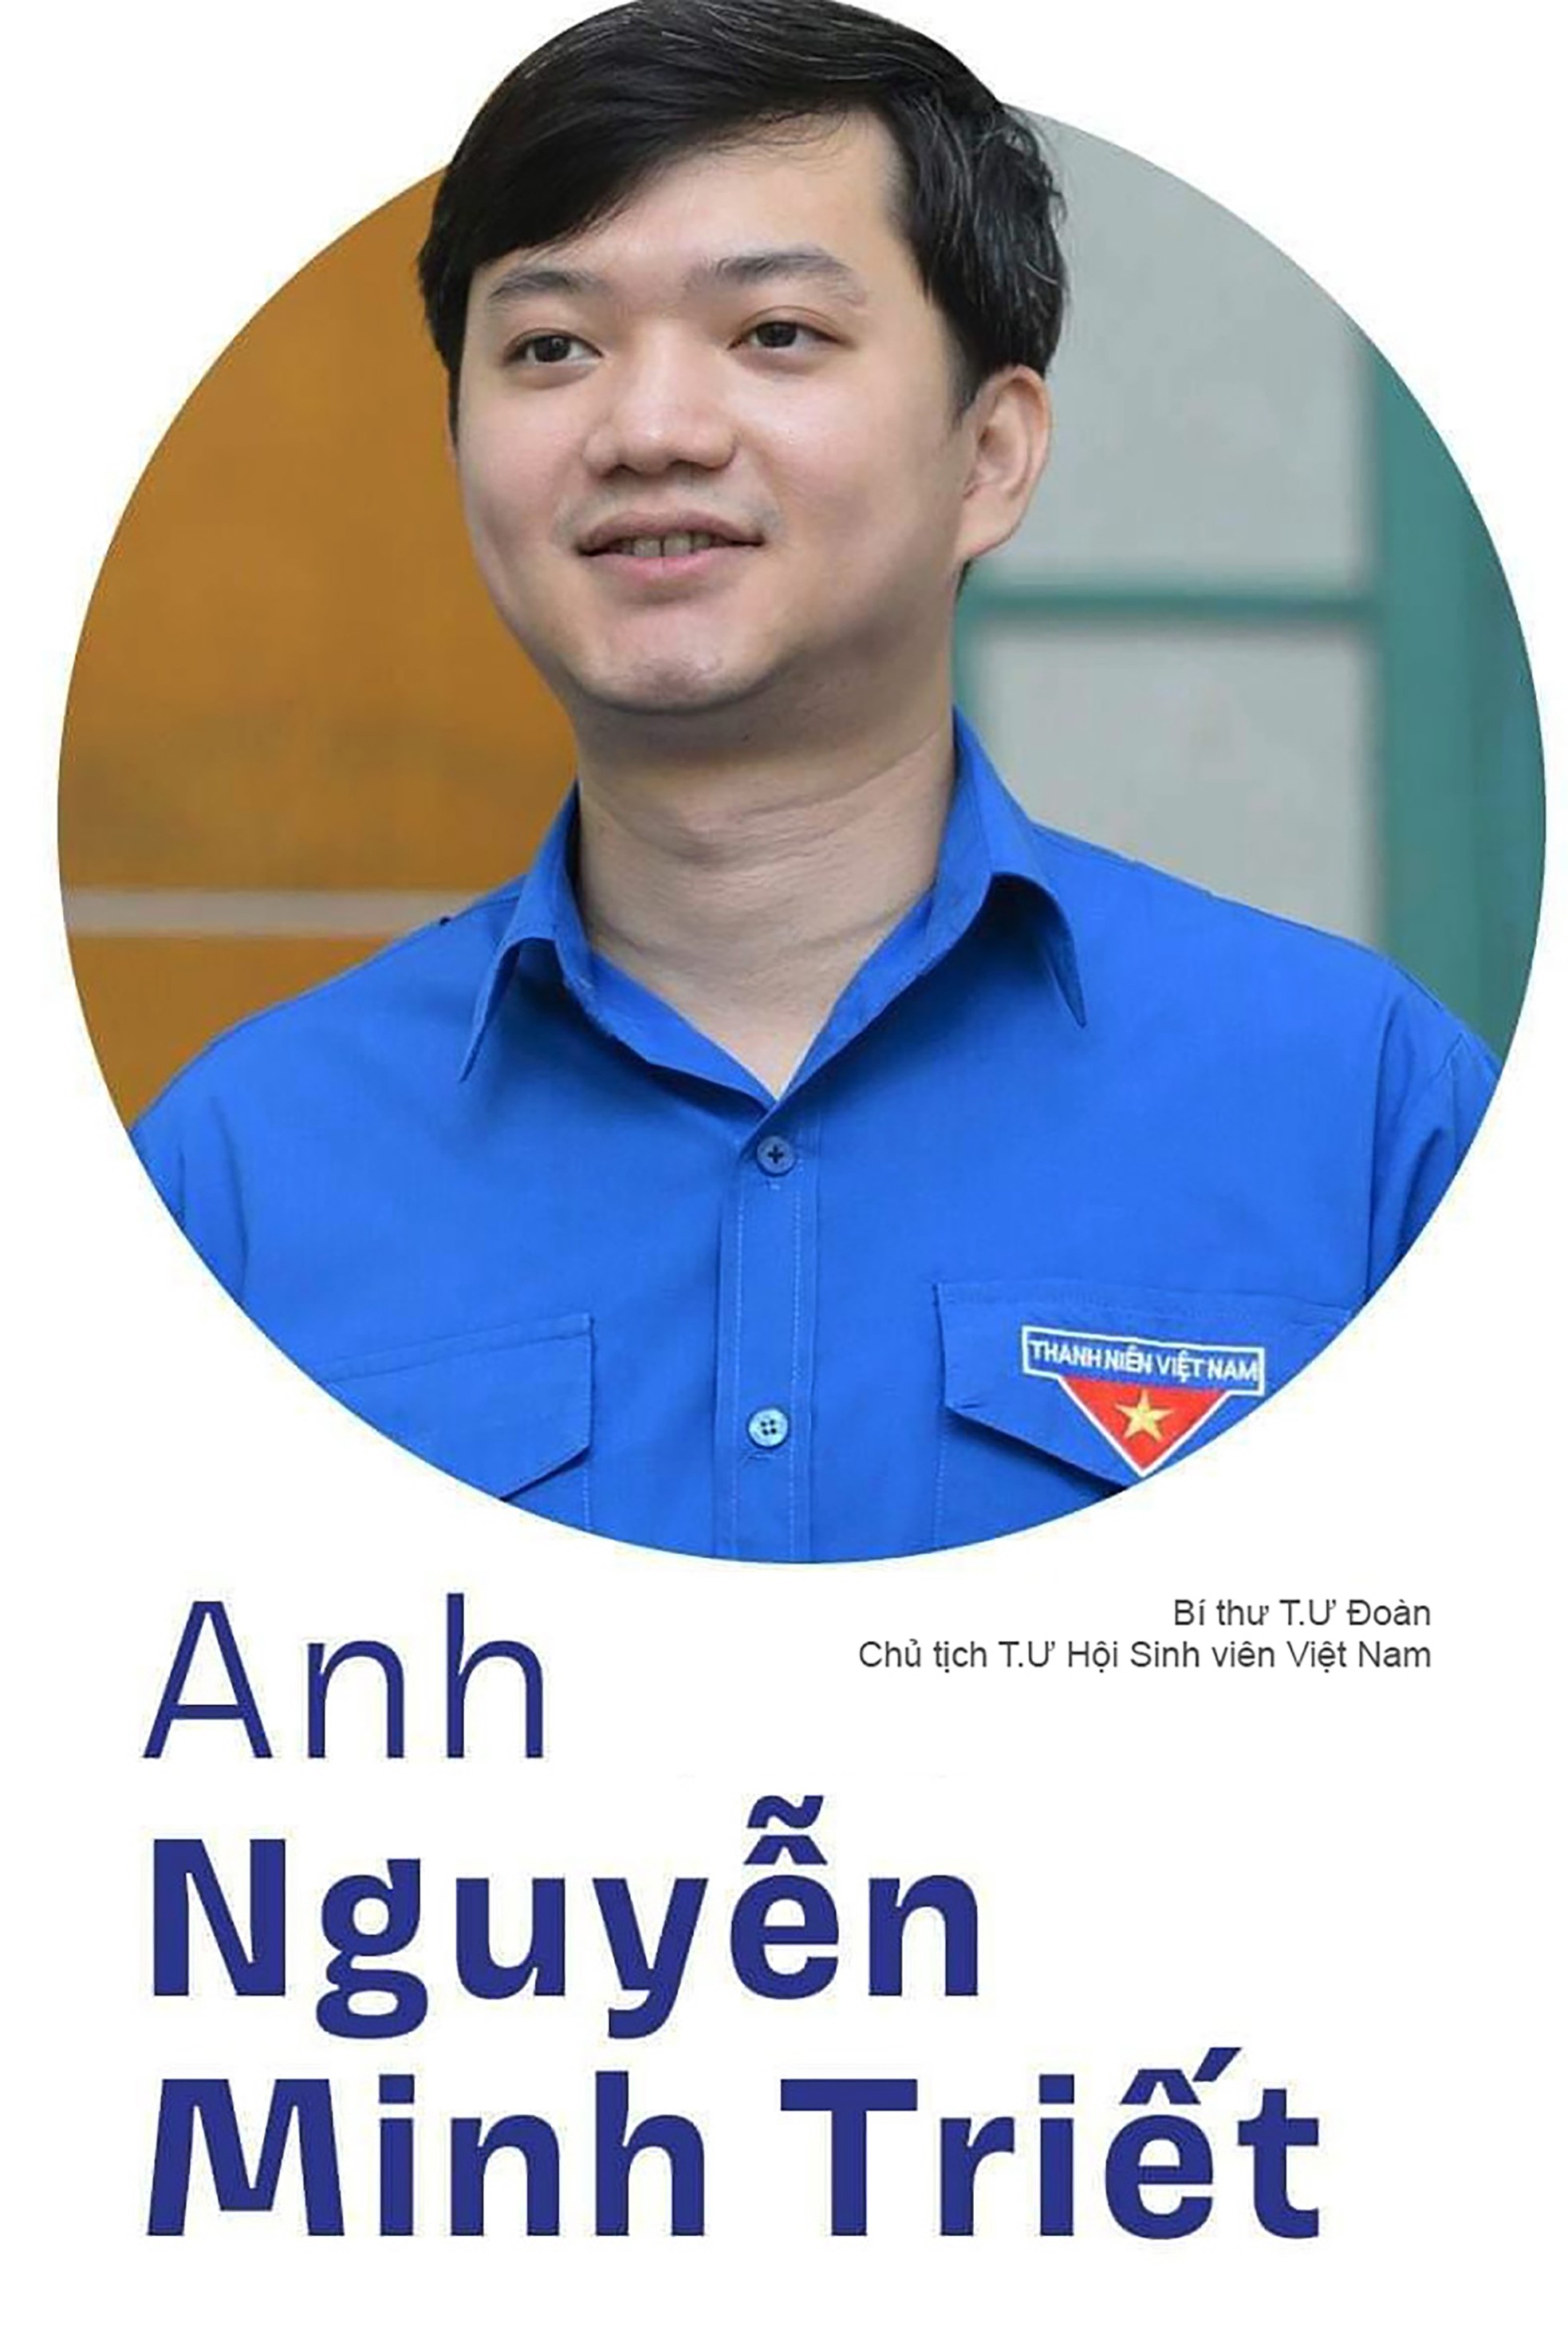 Sinh viên Việt Nam 'Tiên phong' tham gia Chuyển đổi số quốc gia ảnh 1